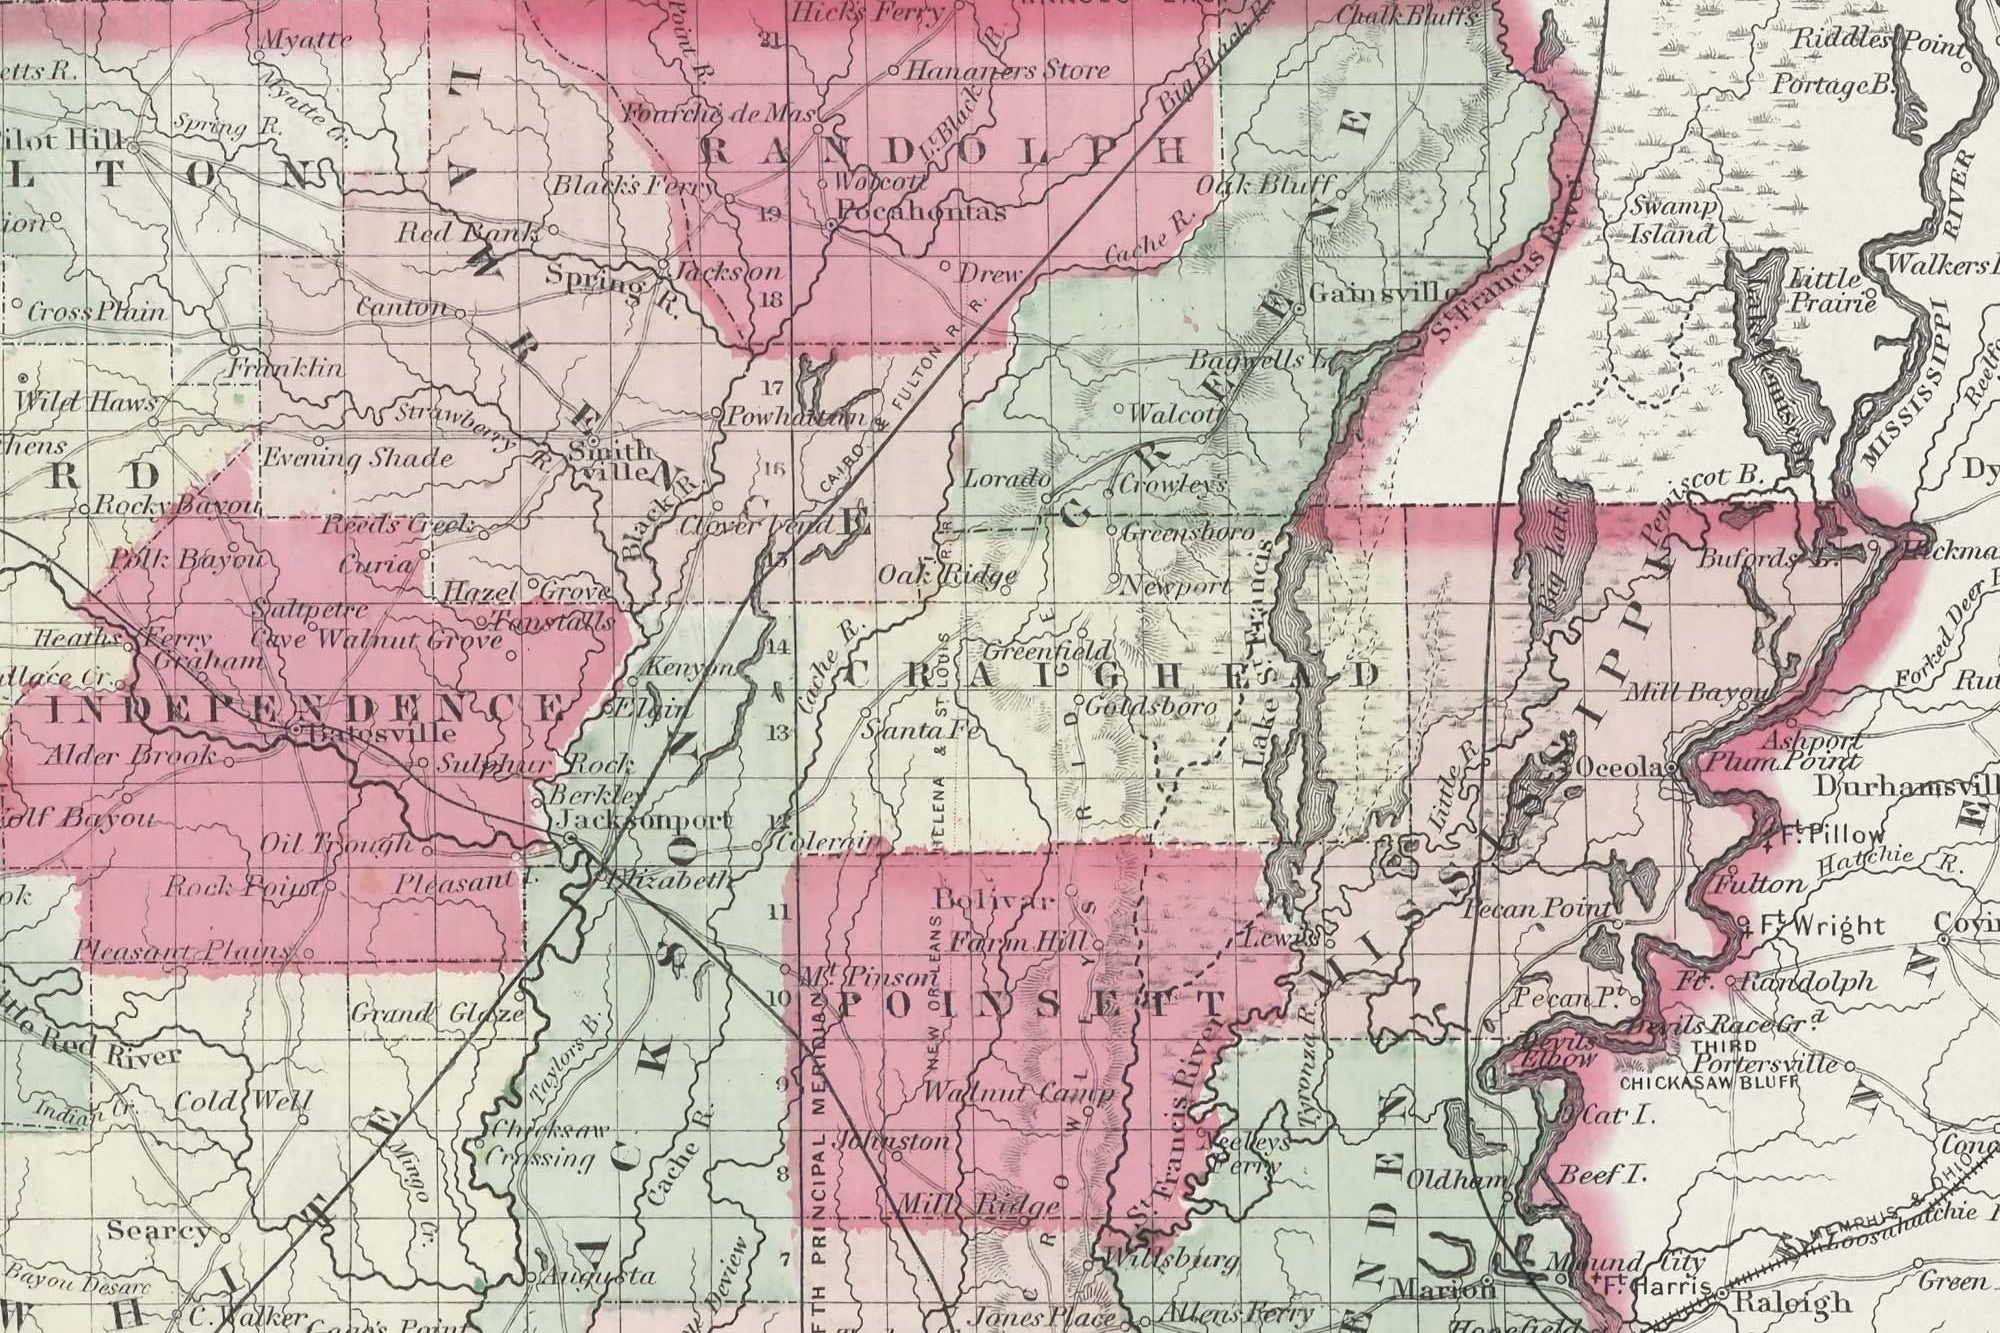 restored historic map of Arkansas